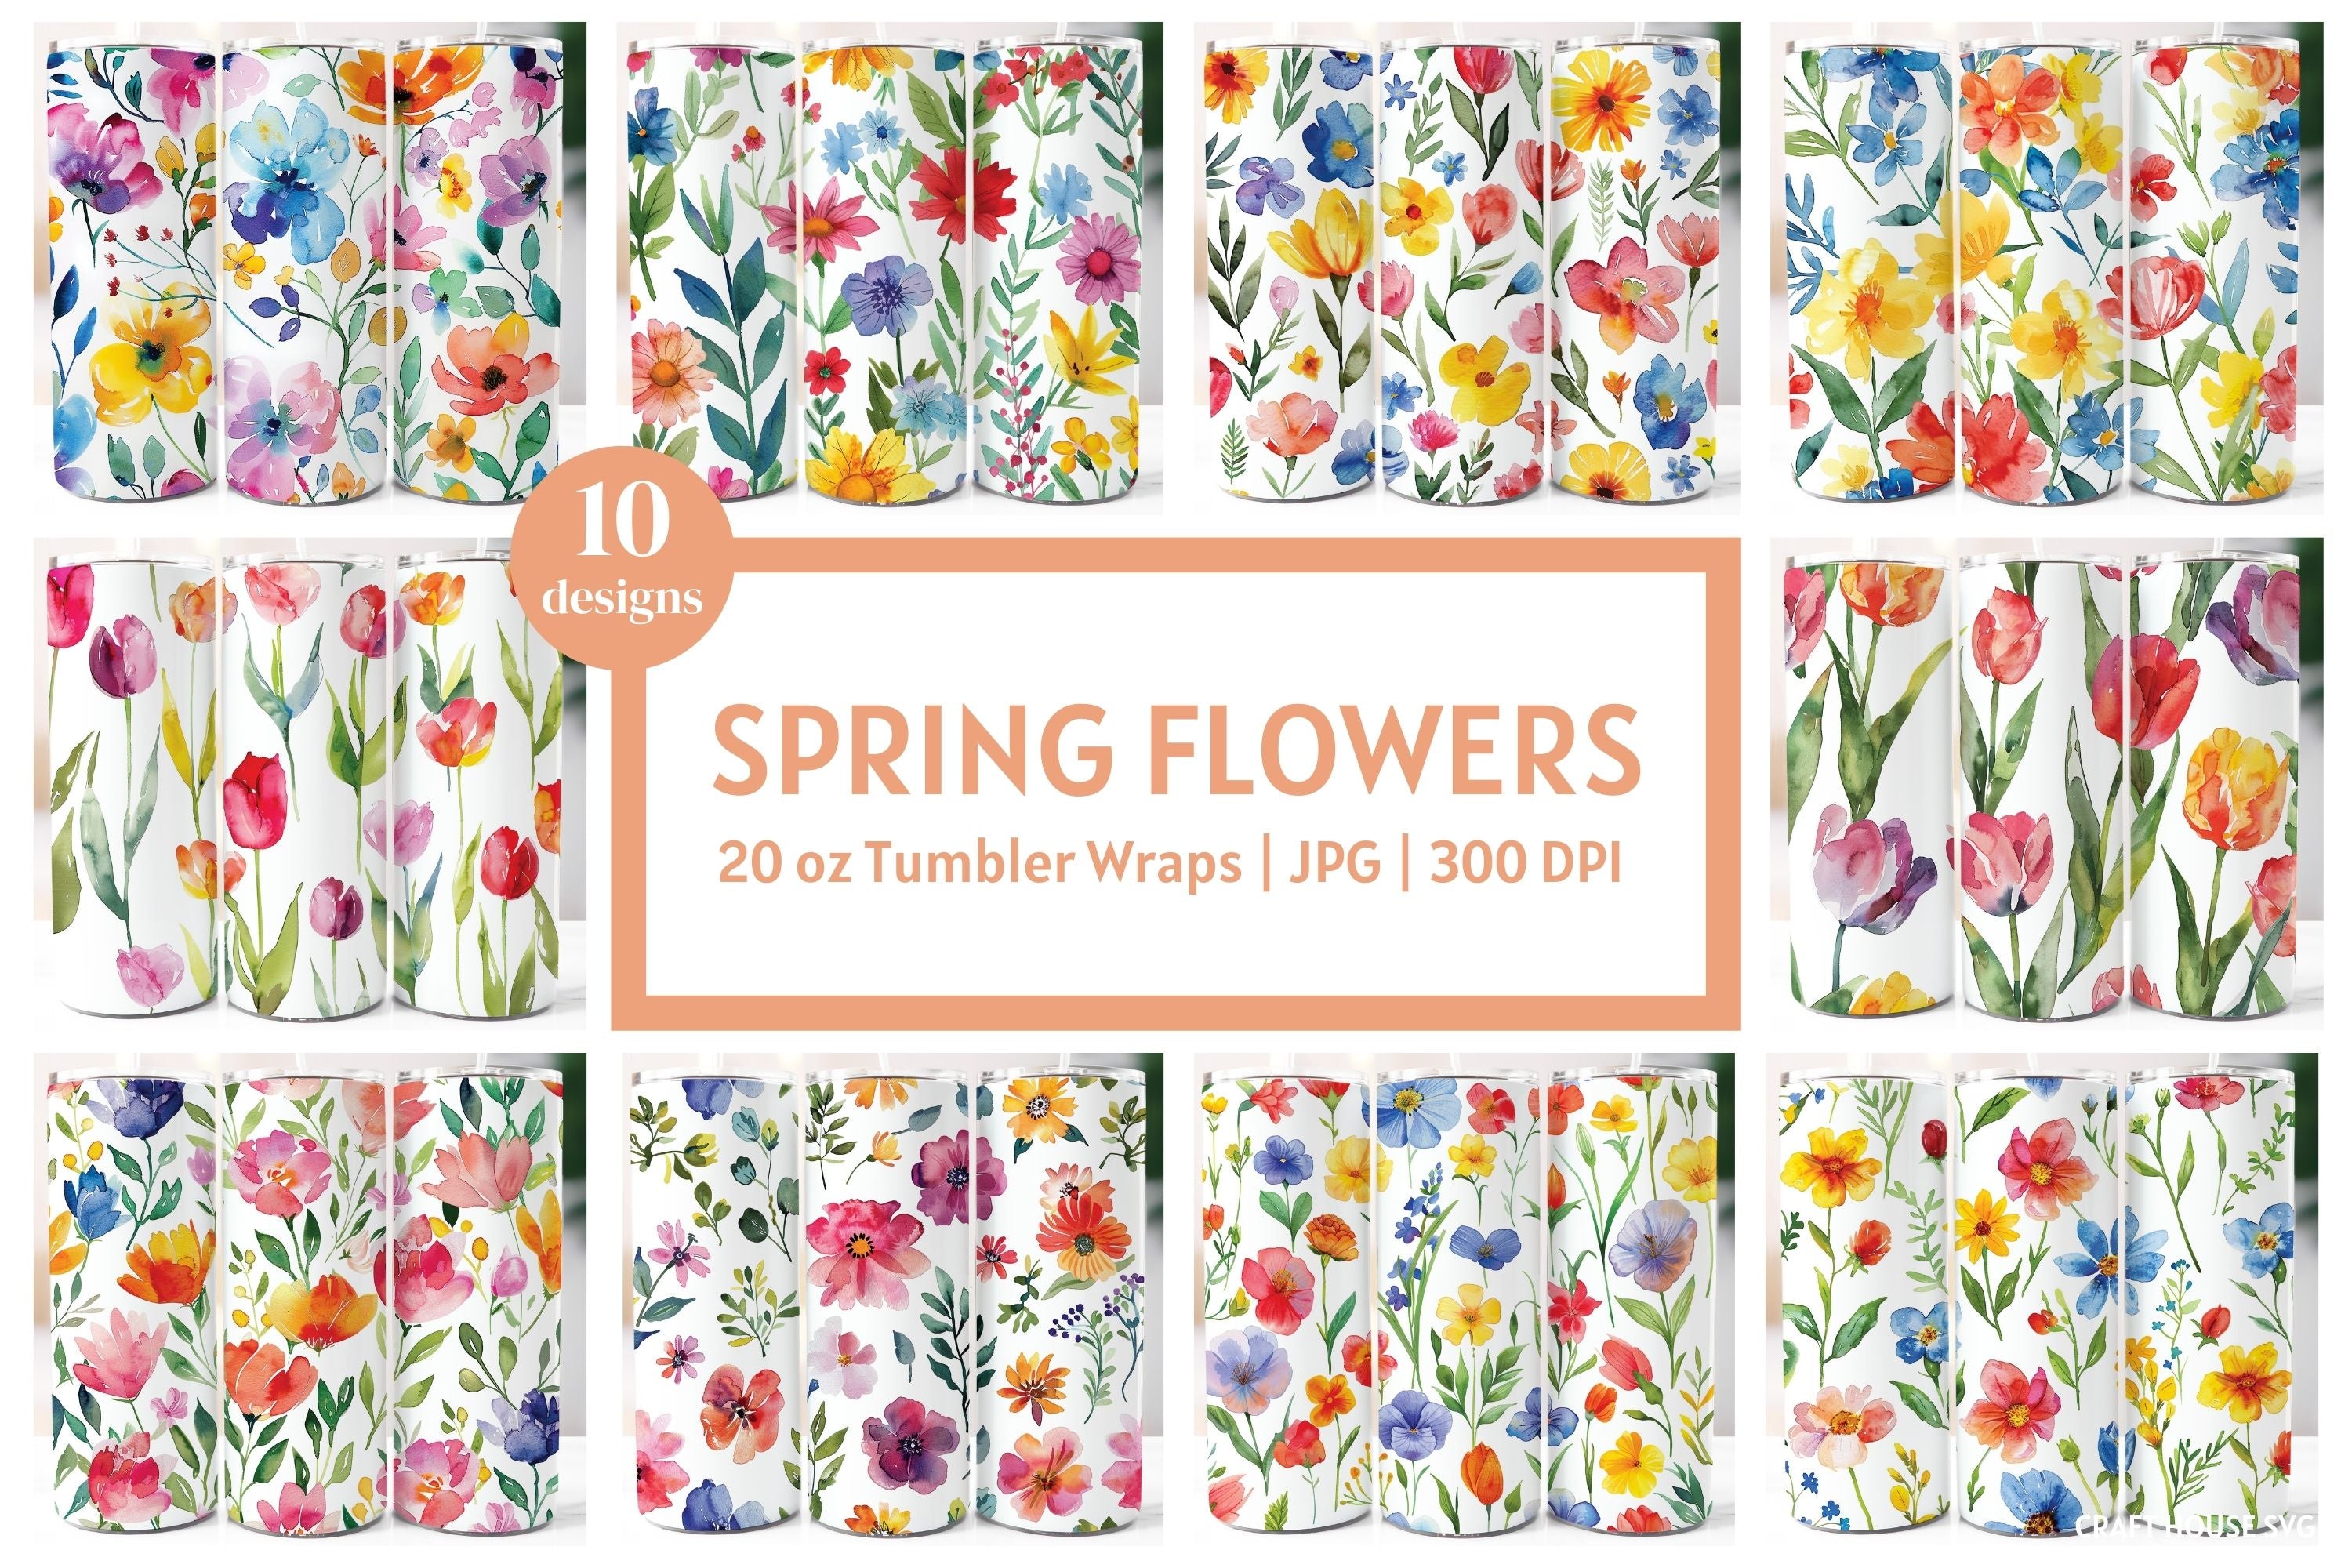 Watercolor Spring Flowers 20 oz Tumbler Wrap Bundle Sublimation Designs JPG